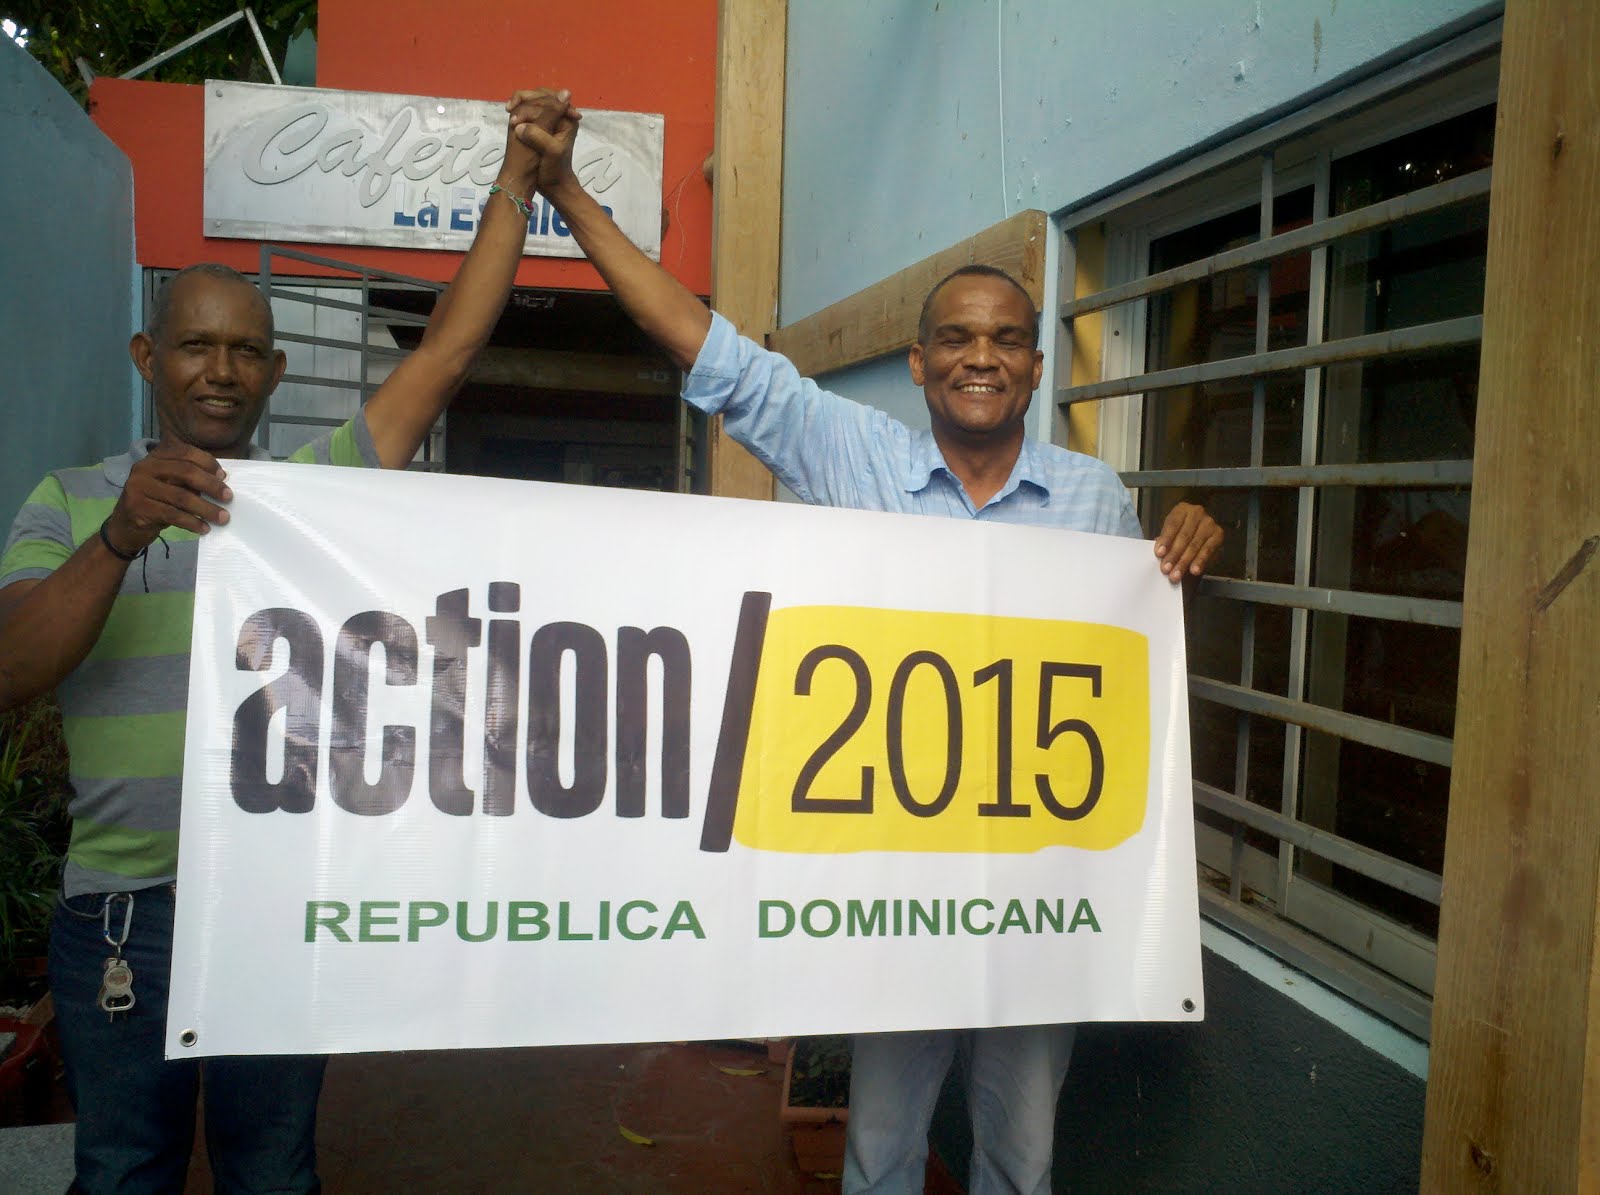 Acción/2015, Rep. Dominicana.